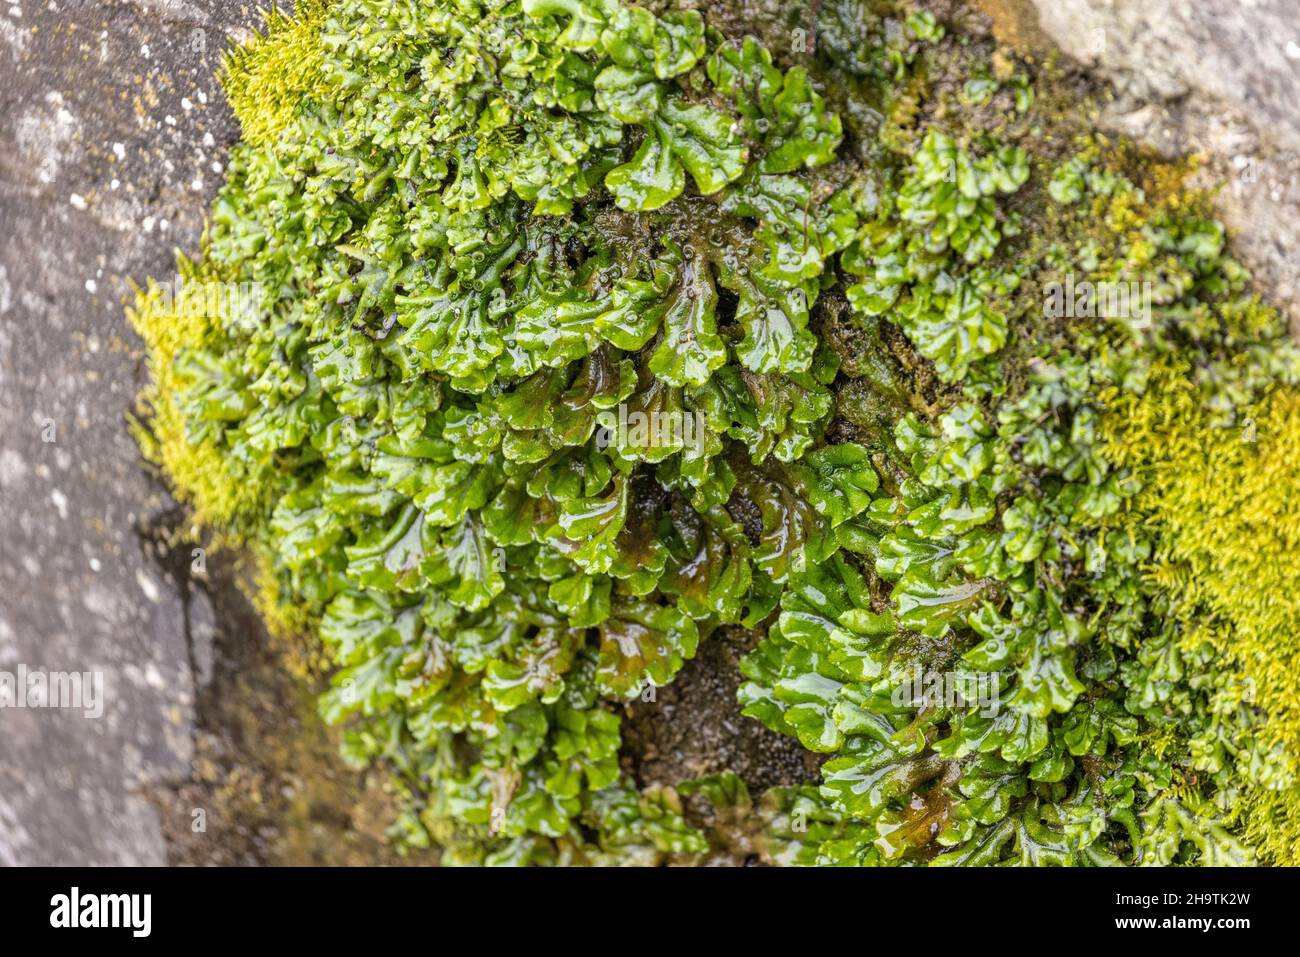 Liverwort común, liverwort paraguas (Marchantia polymorpha), creciendo en una pared húmeda, Alemania, Baviera Foto de stock